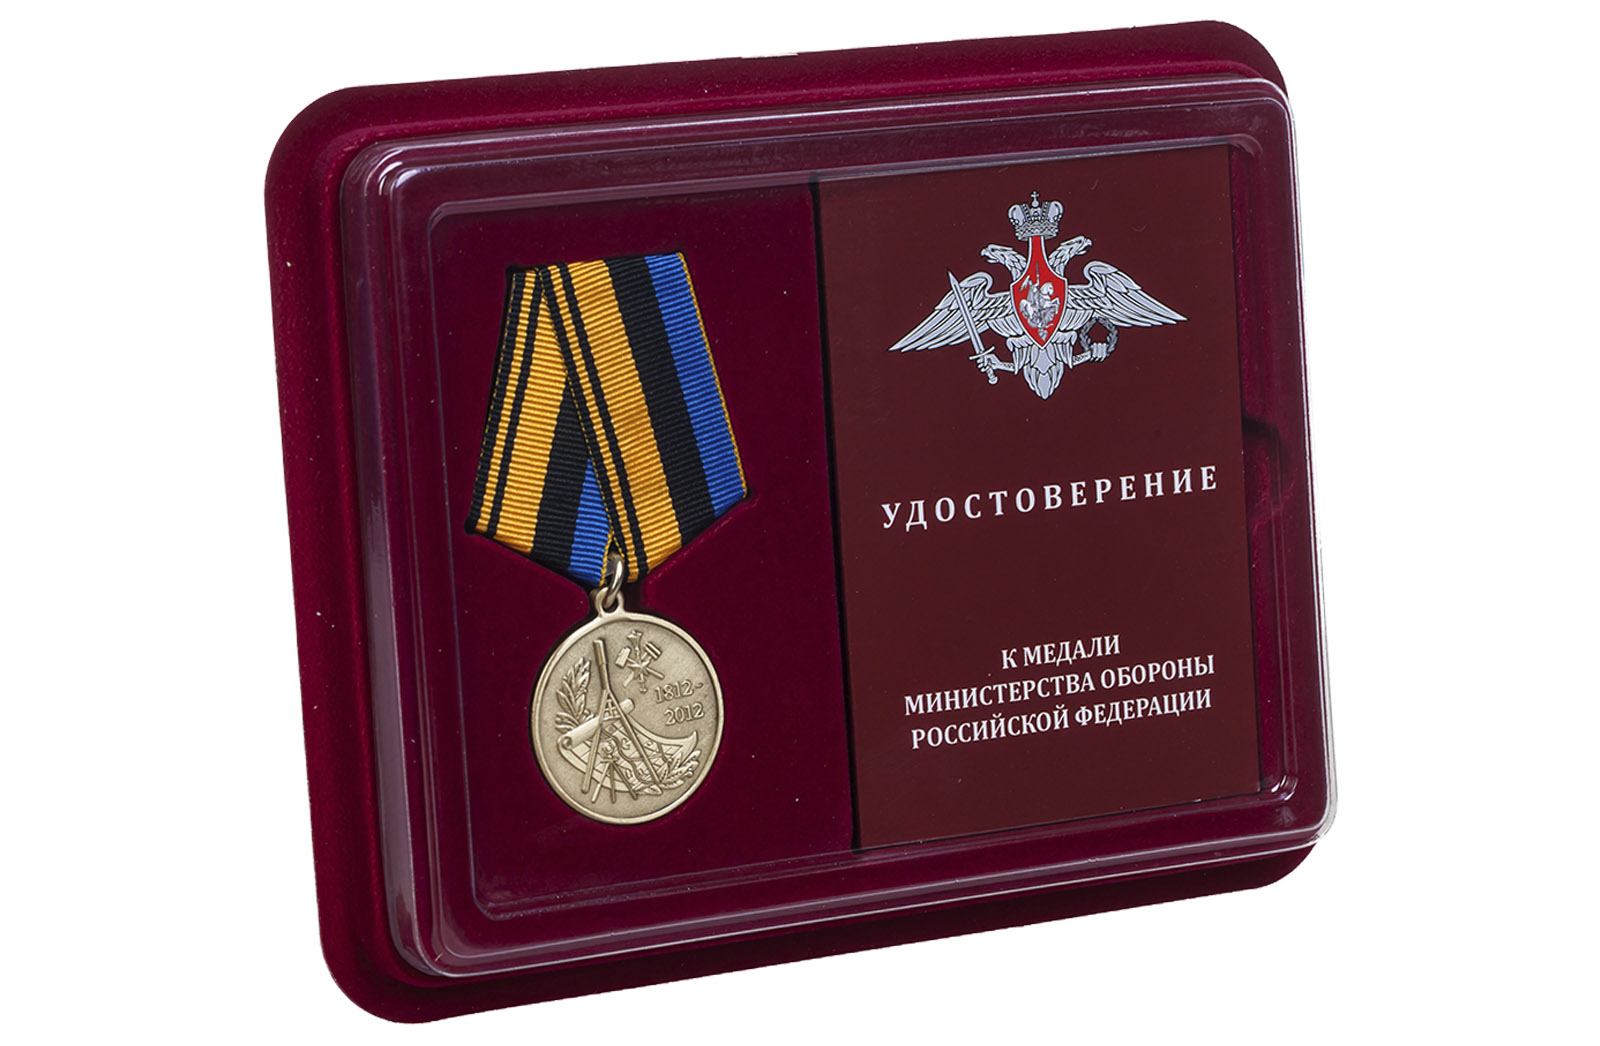 Медаль "200 лет Военно-топографическому управлению Генштаба" 